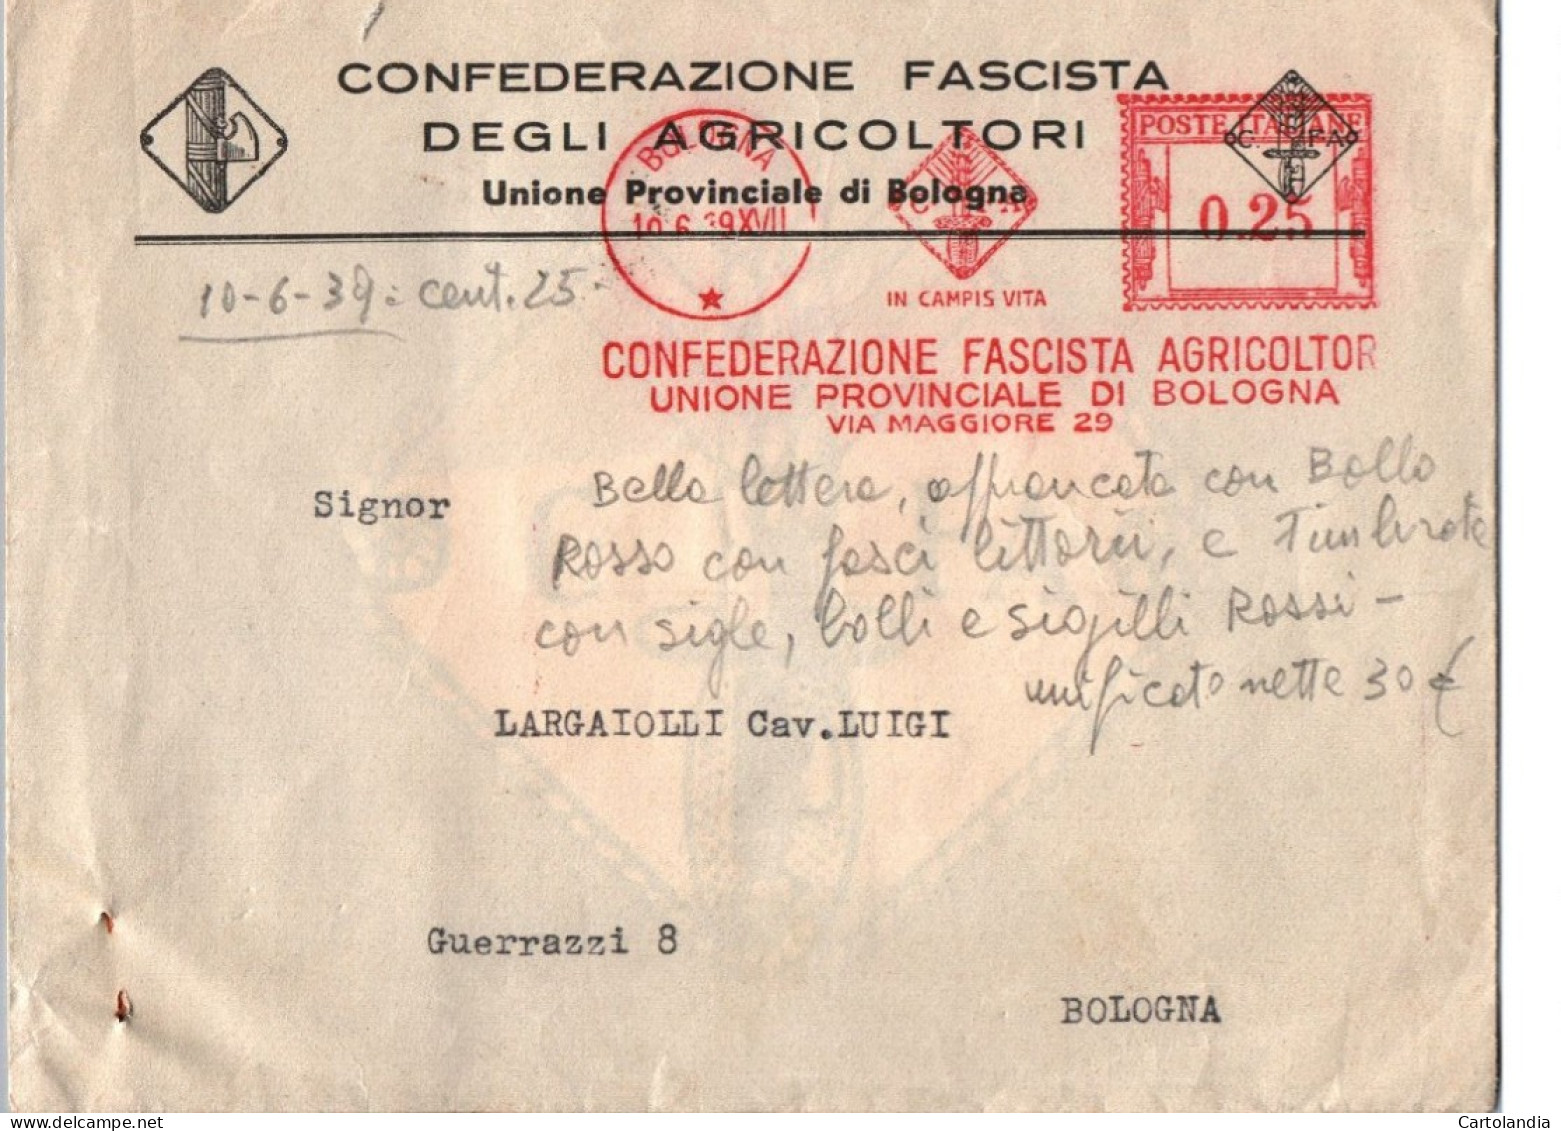 ITALIA 1939   -   Annullo Meccanico Rosso (EMA)  Confederazione Fascista Degli Agricoltori Bologna - Maschinenstempel (EMA)